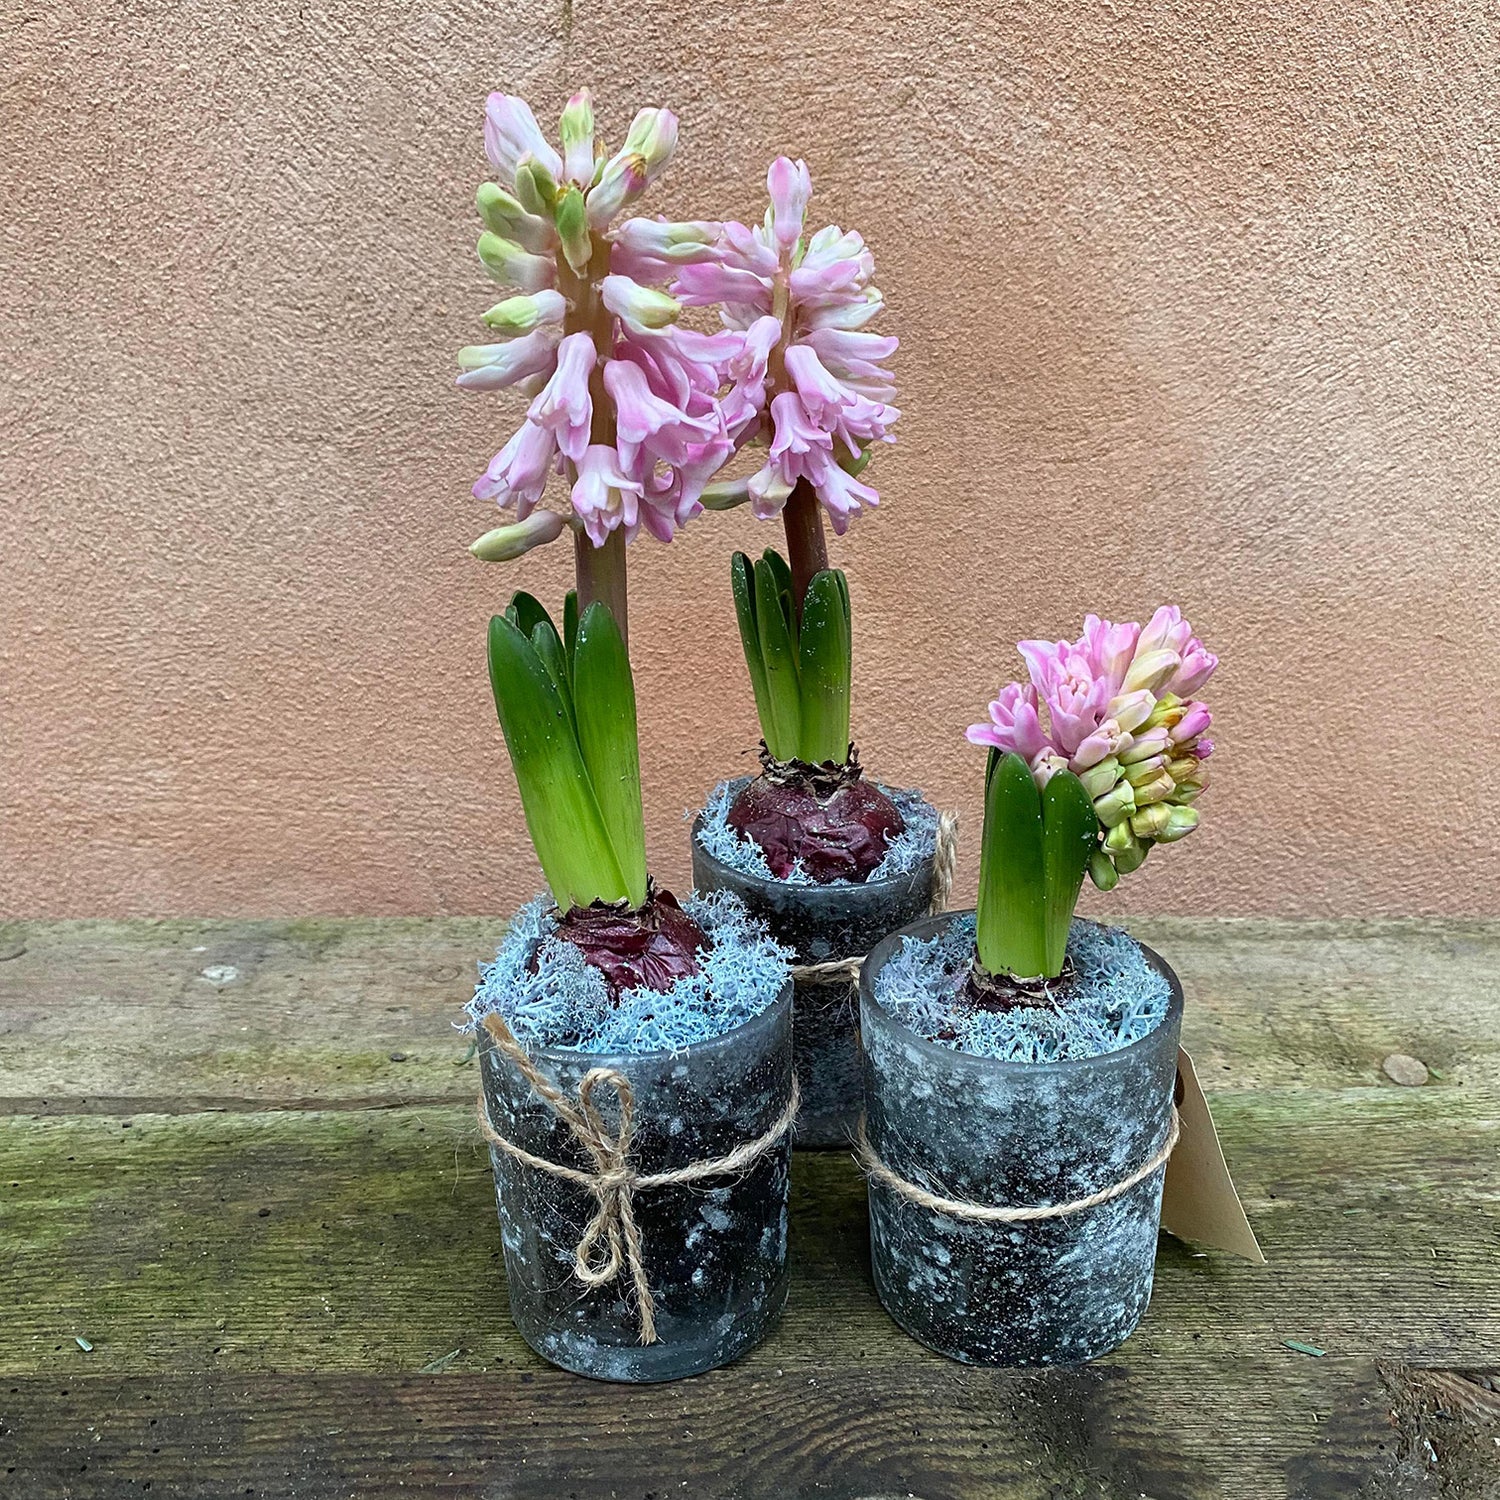 Dekoration med hyacint – Planteskolen Stege Bugt